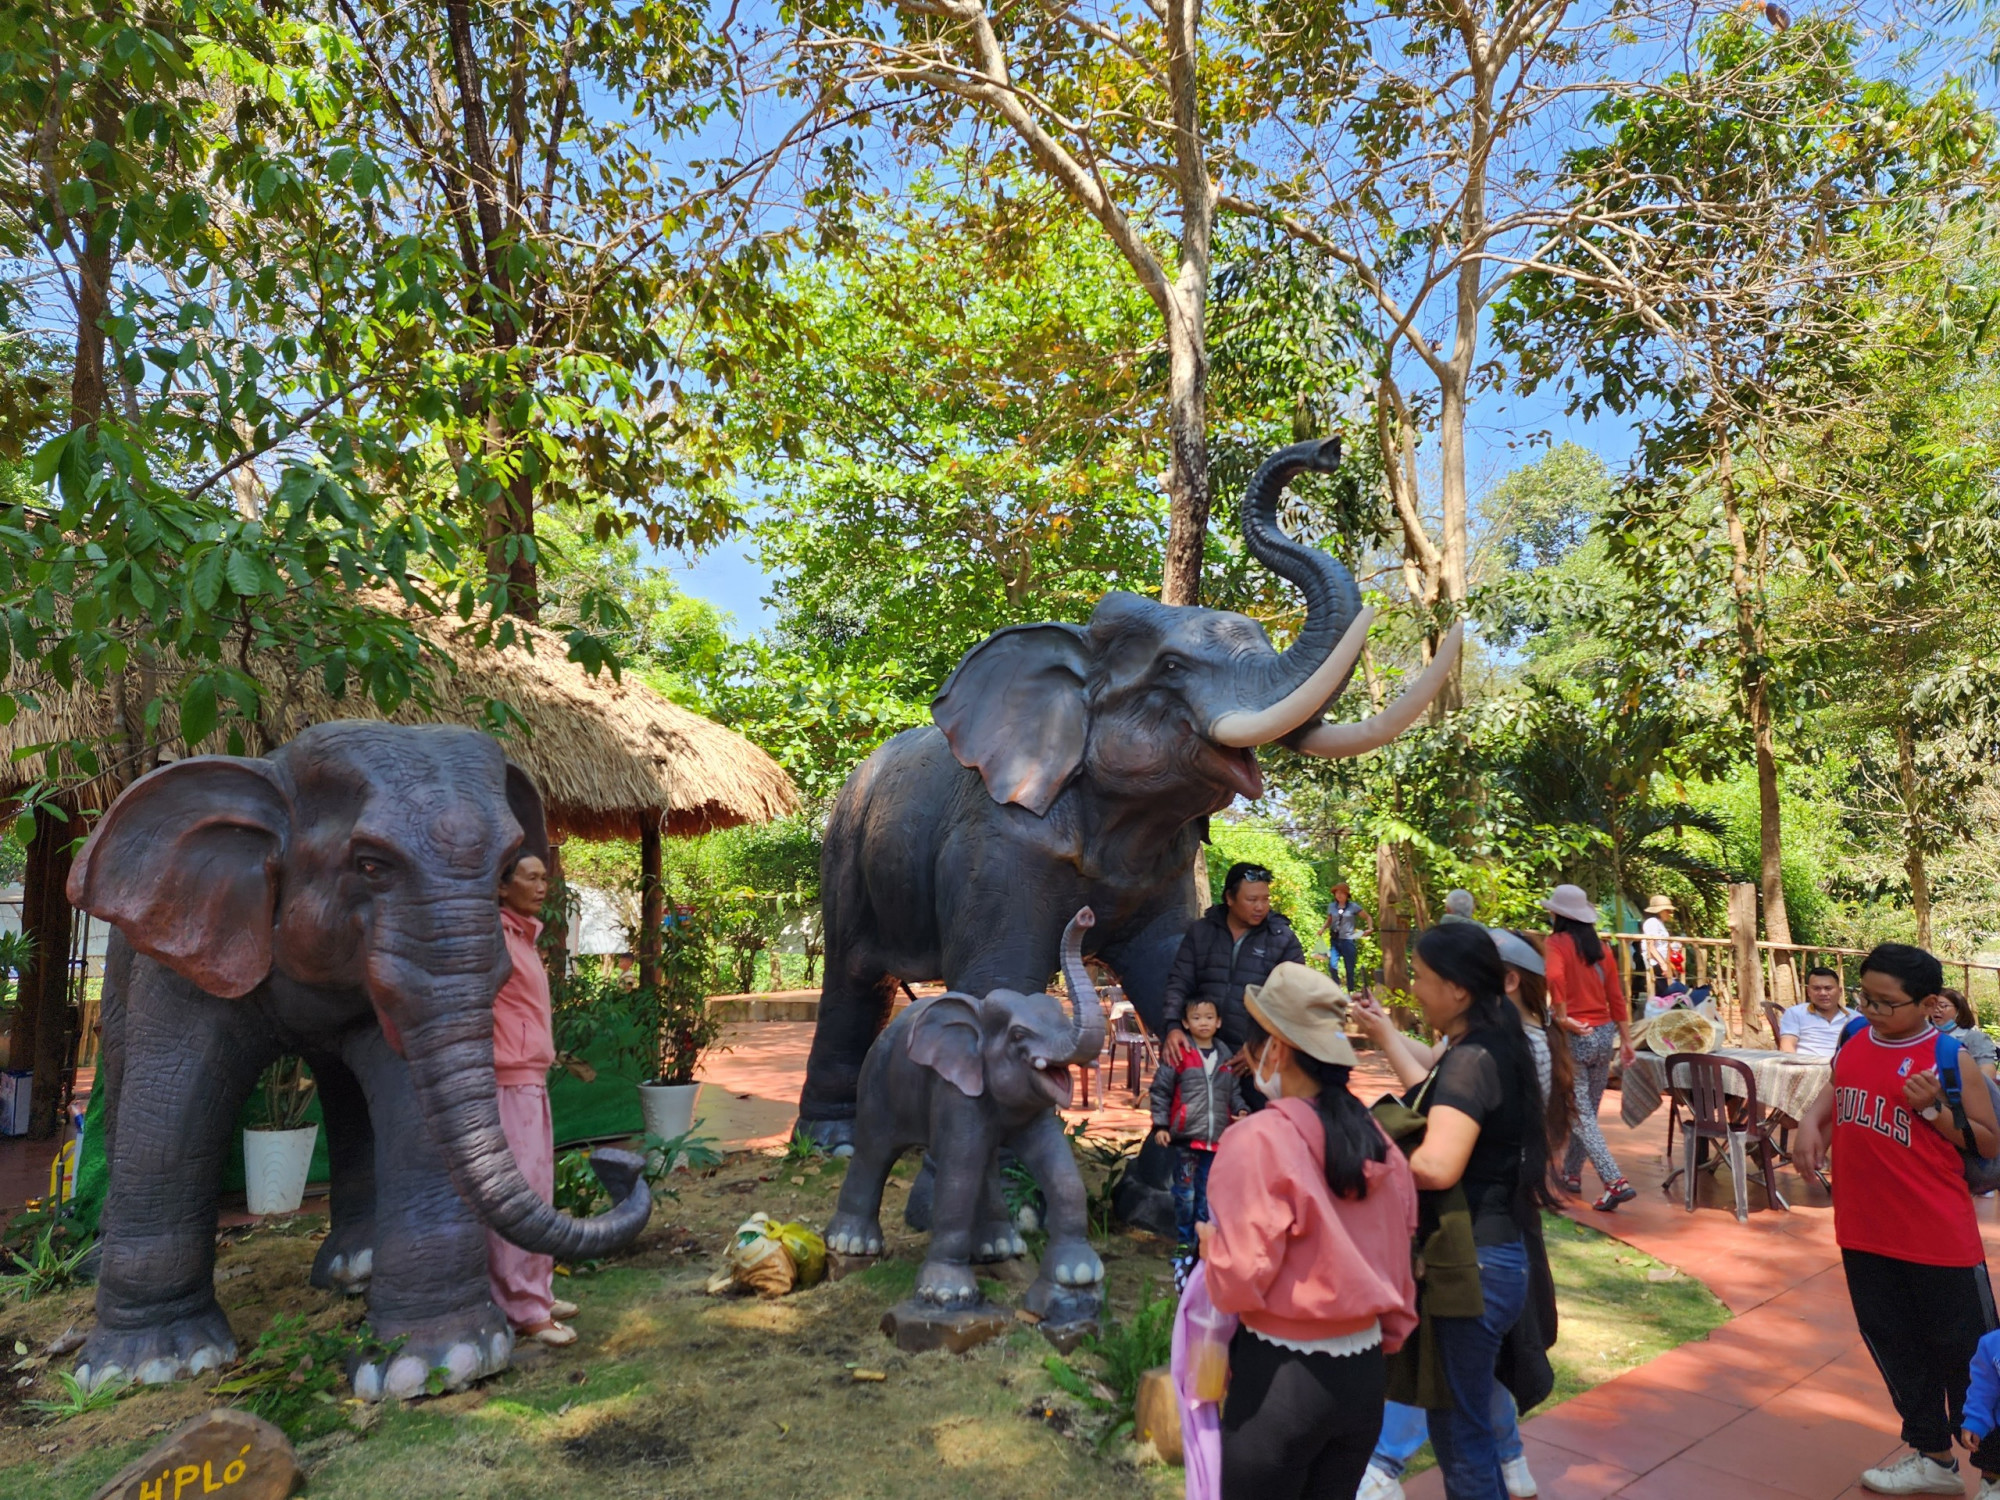 Du khách thích thú khi được chụp ảnh với các biểu tượng voi tại hội voi.